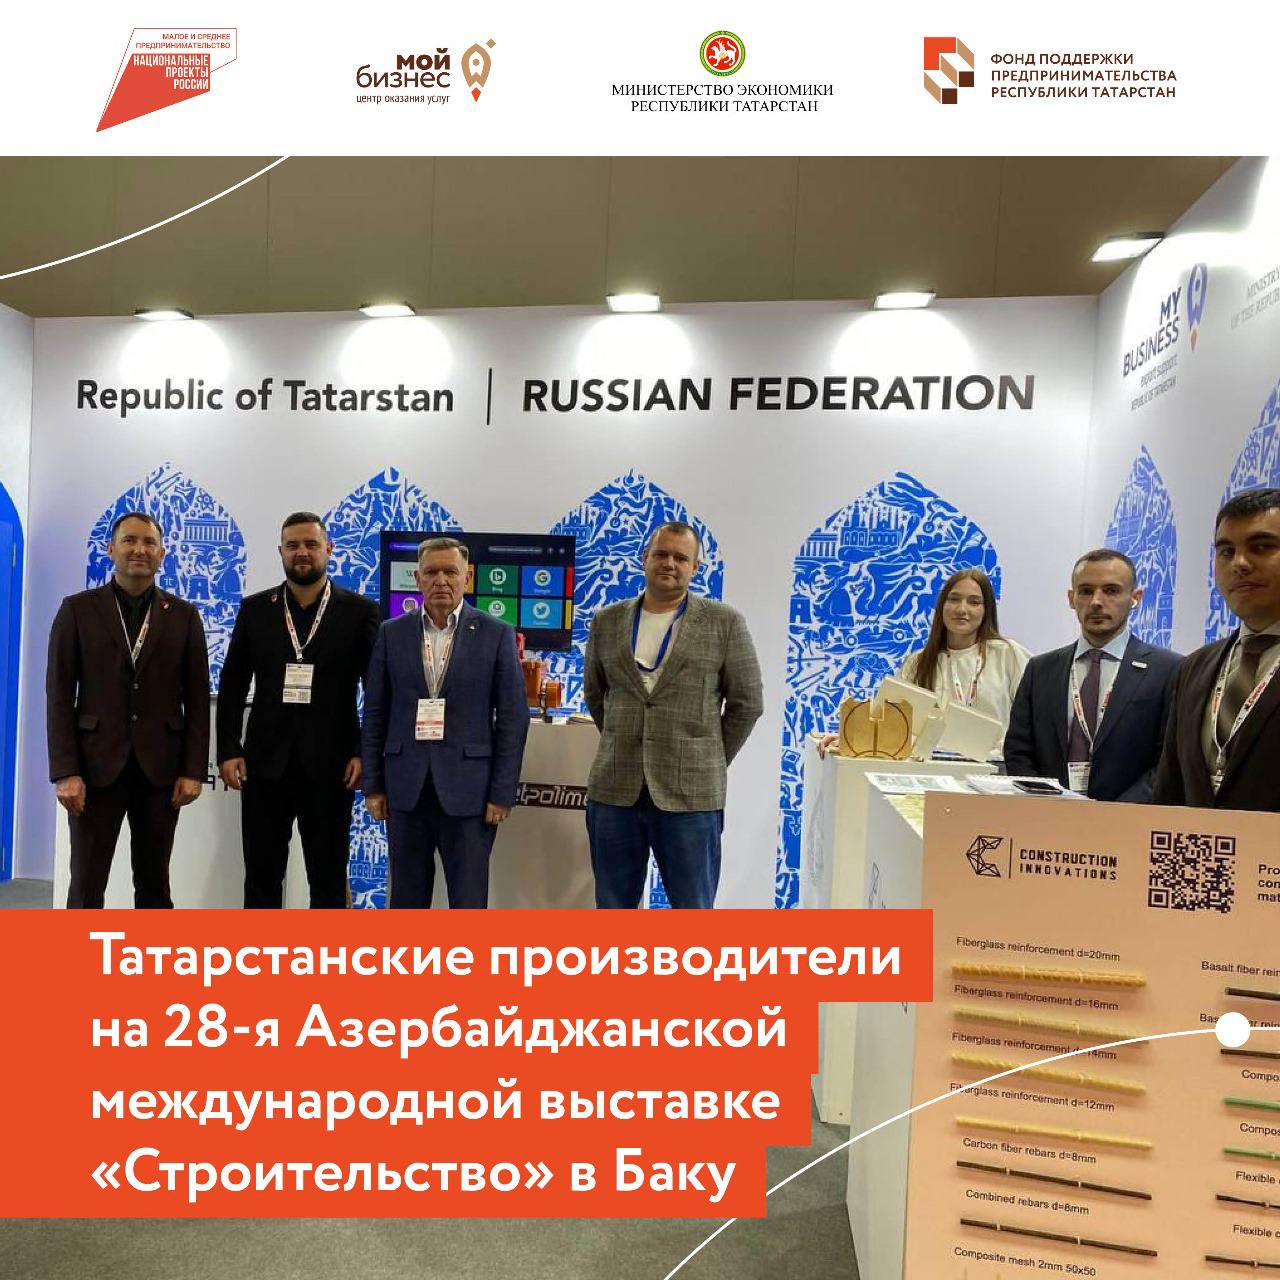 Татарстанские производители представили продукцию на 28-й Азербайджанской международной выставке «Строительство» в Баку.